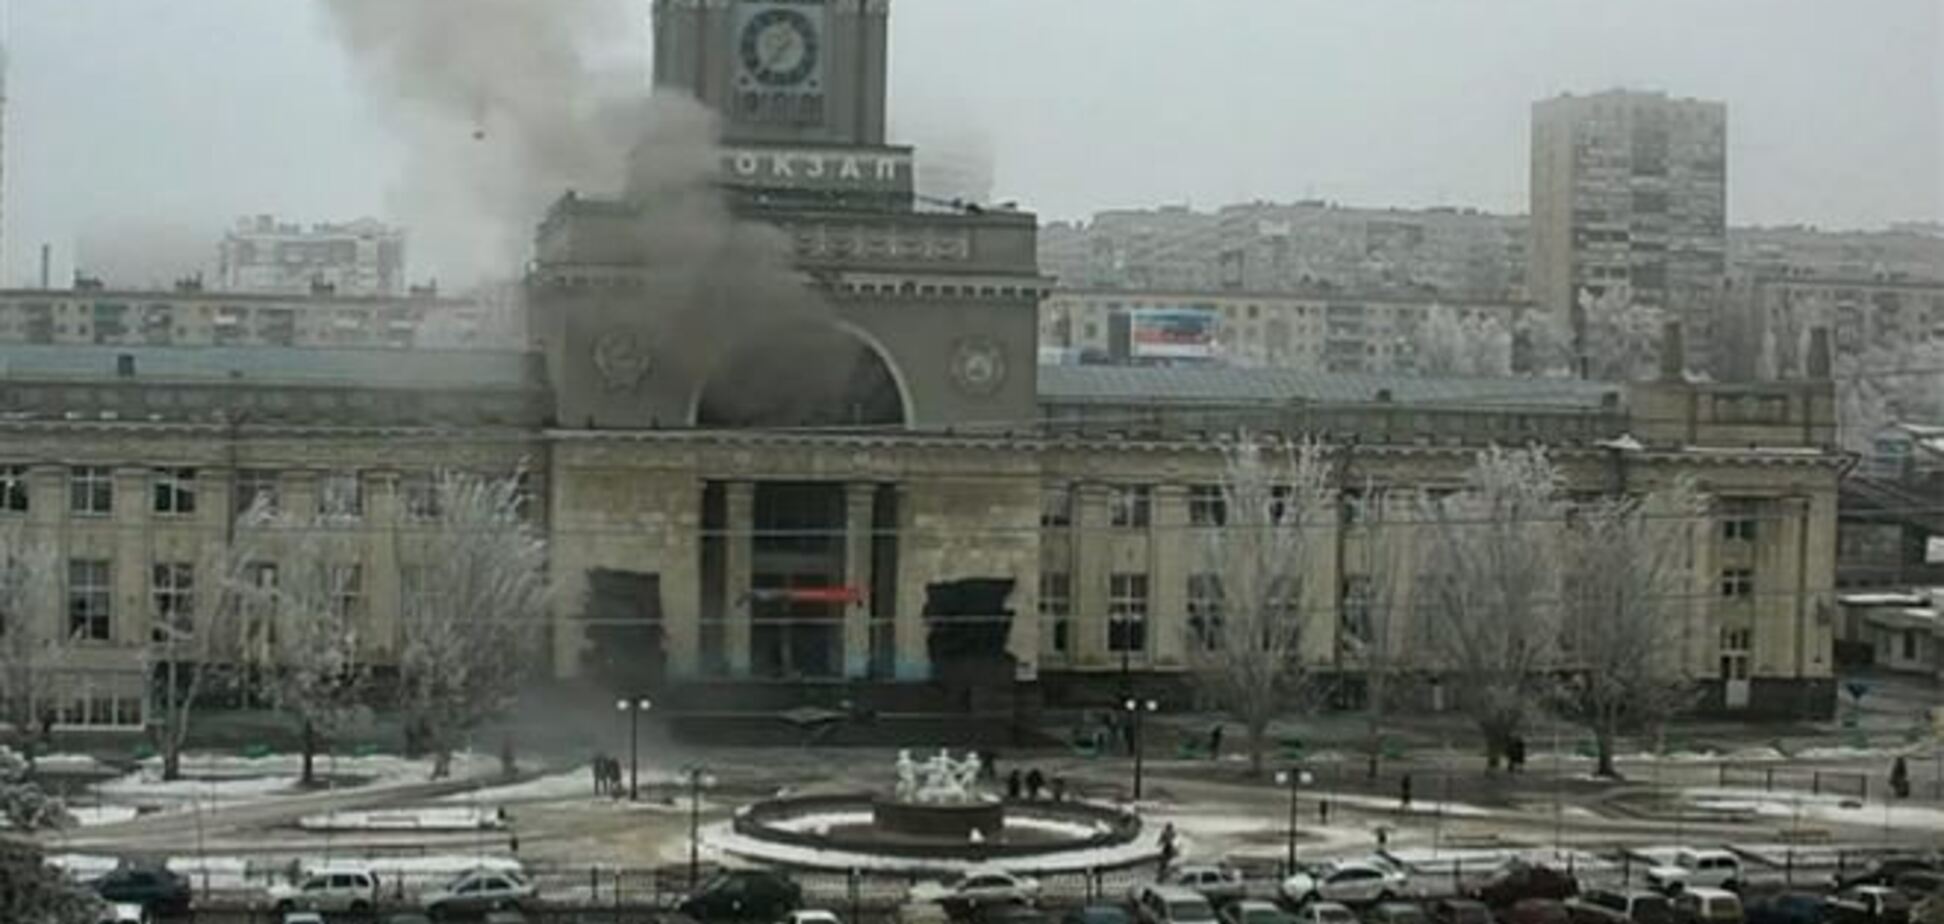 Теракт у Волгограді ставить під сумнів безпеку Олімпіади в Сочі - західні ЗМІ